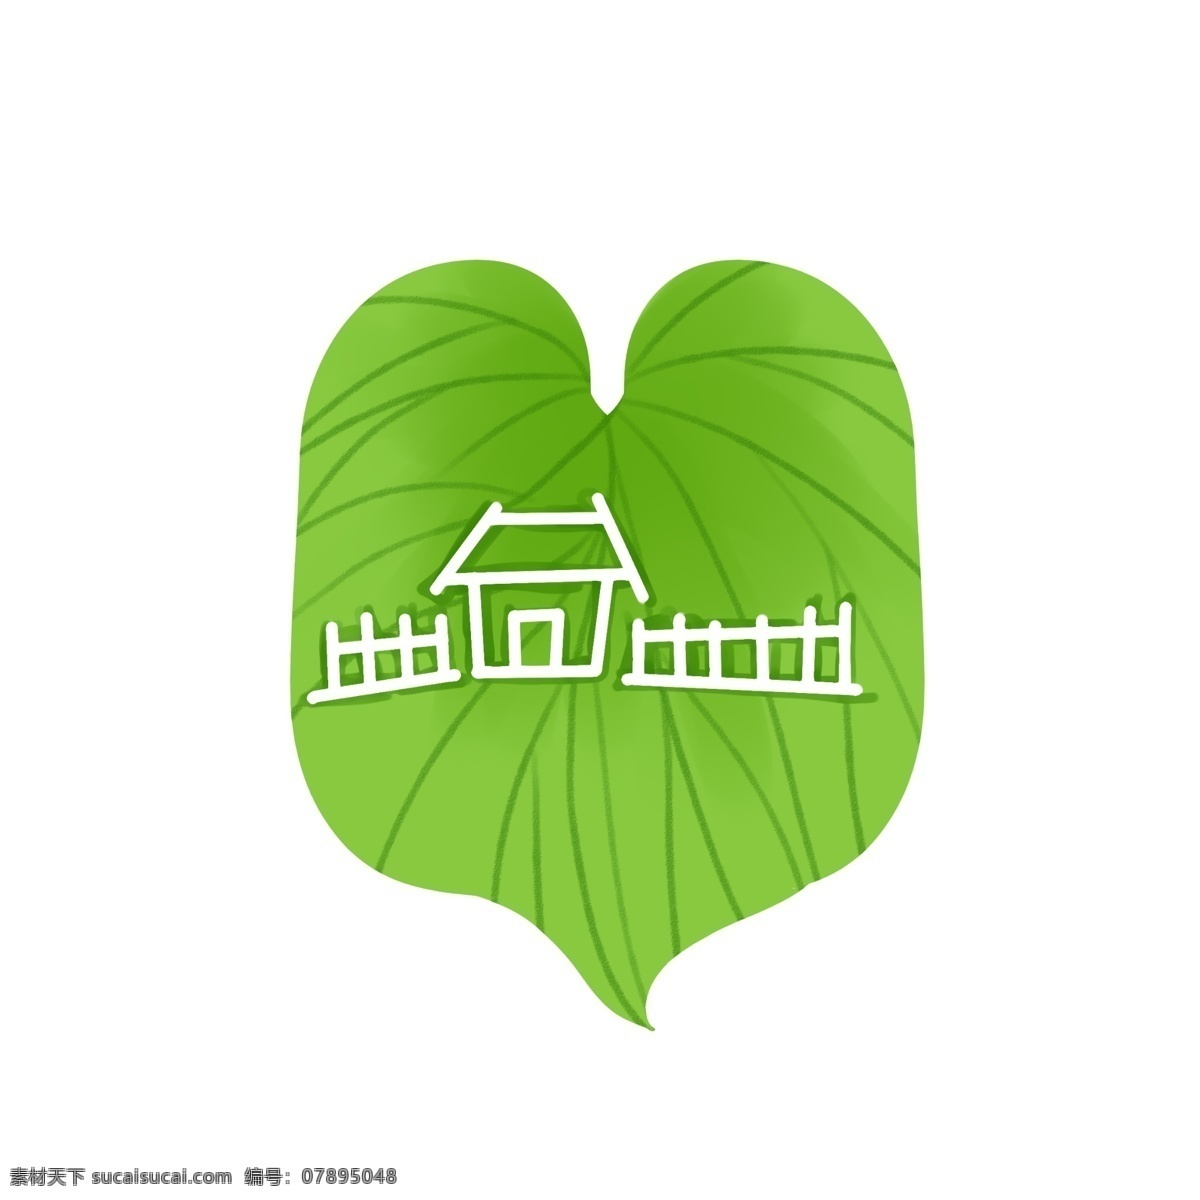 房子篱笆 绿色植物叶子 房子 手绘 白色 篱笆 绿色 植物 叶子 艾叶 中药 墨绿 黑色 天然 大自然 装饰 贴画